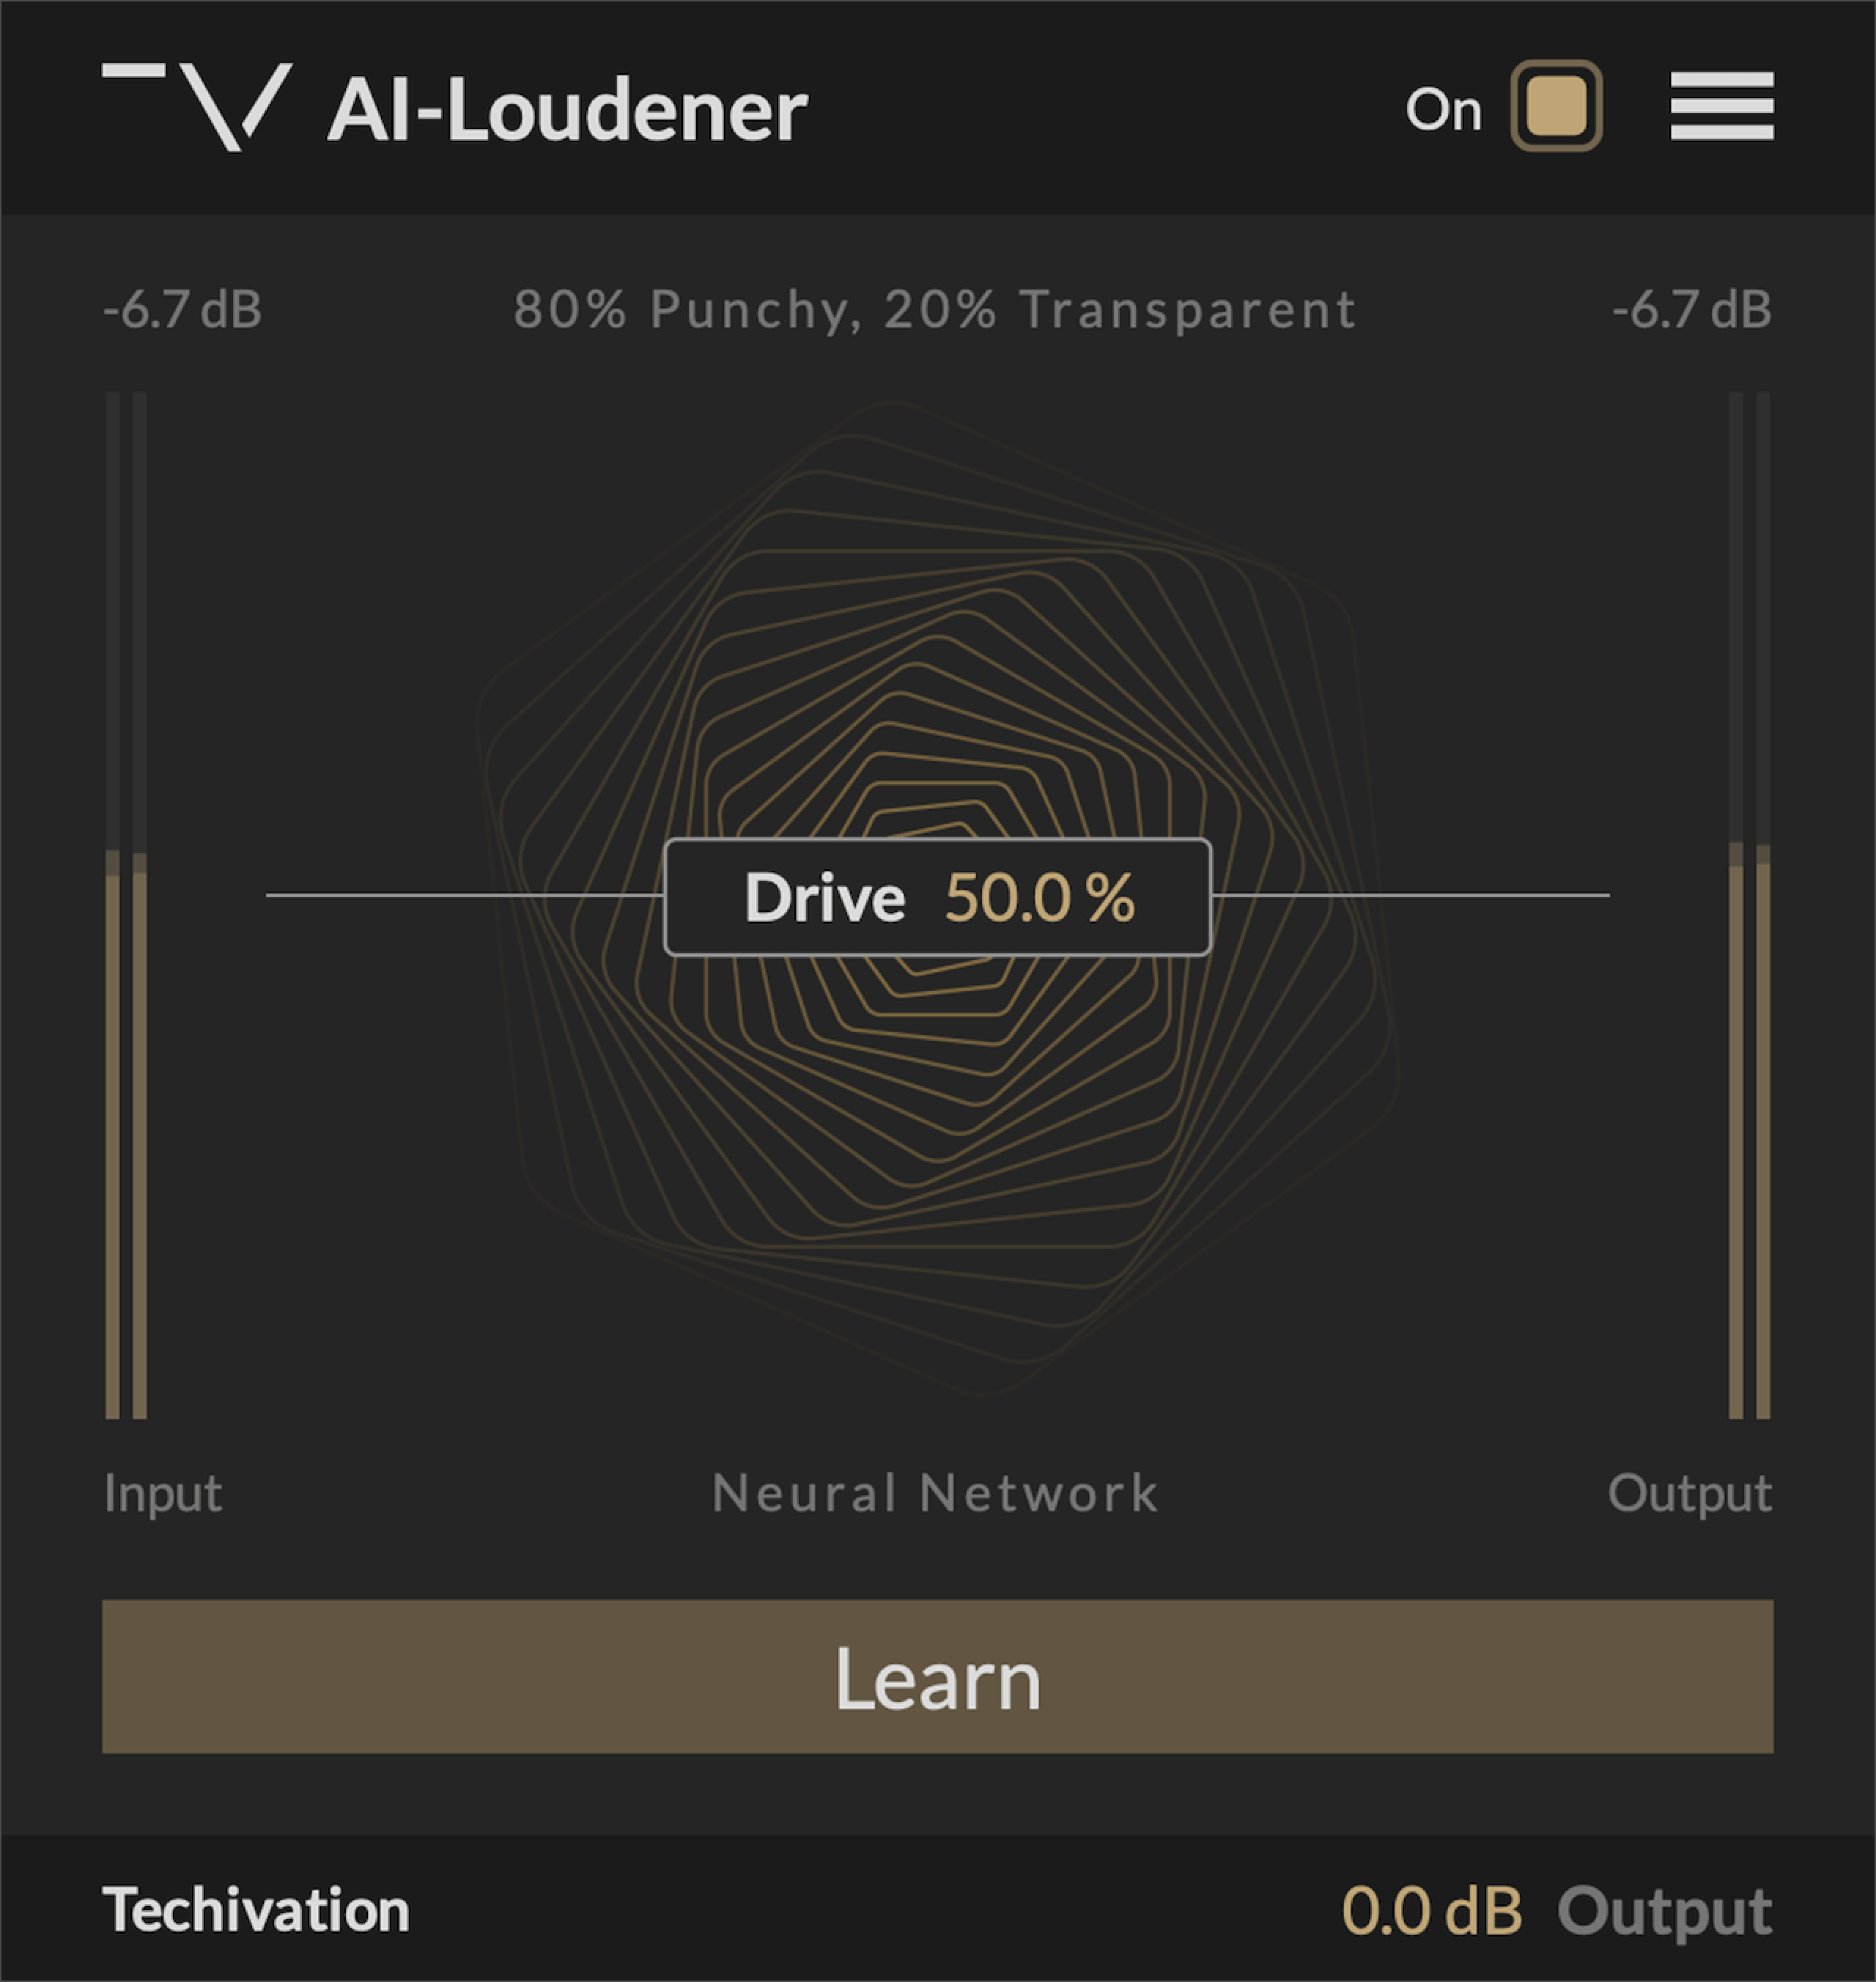 AI-Loudener